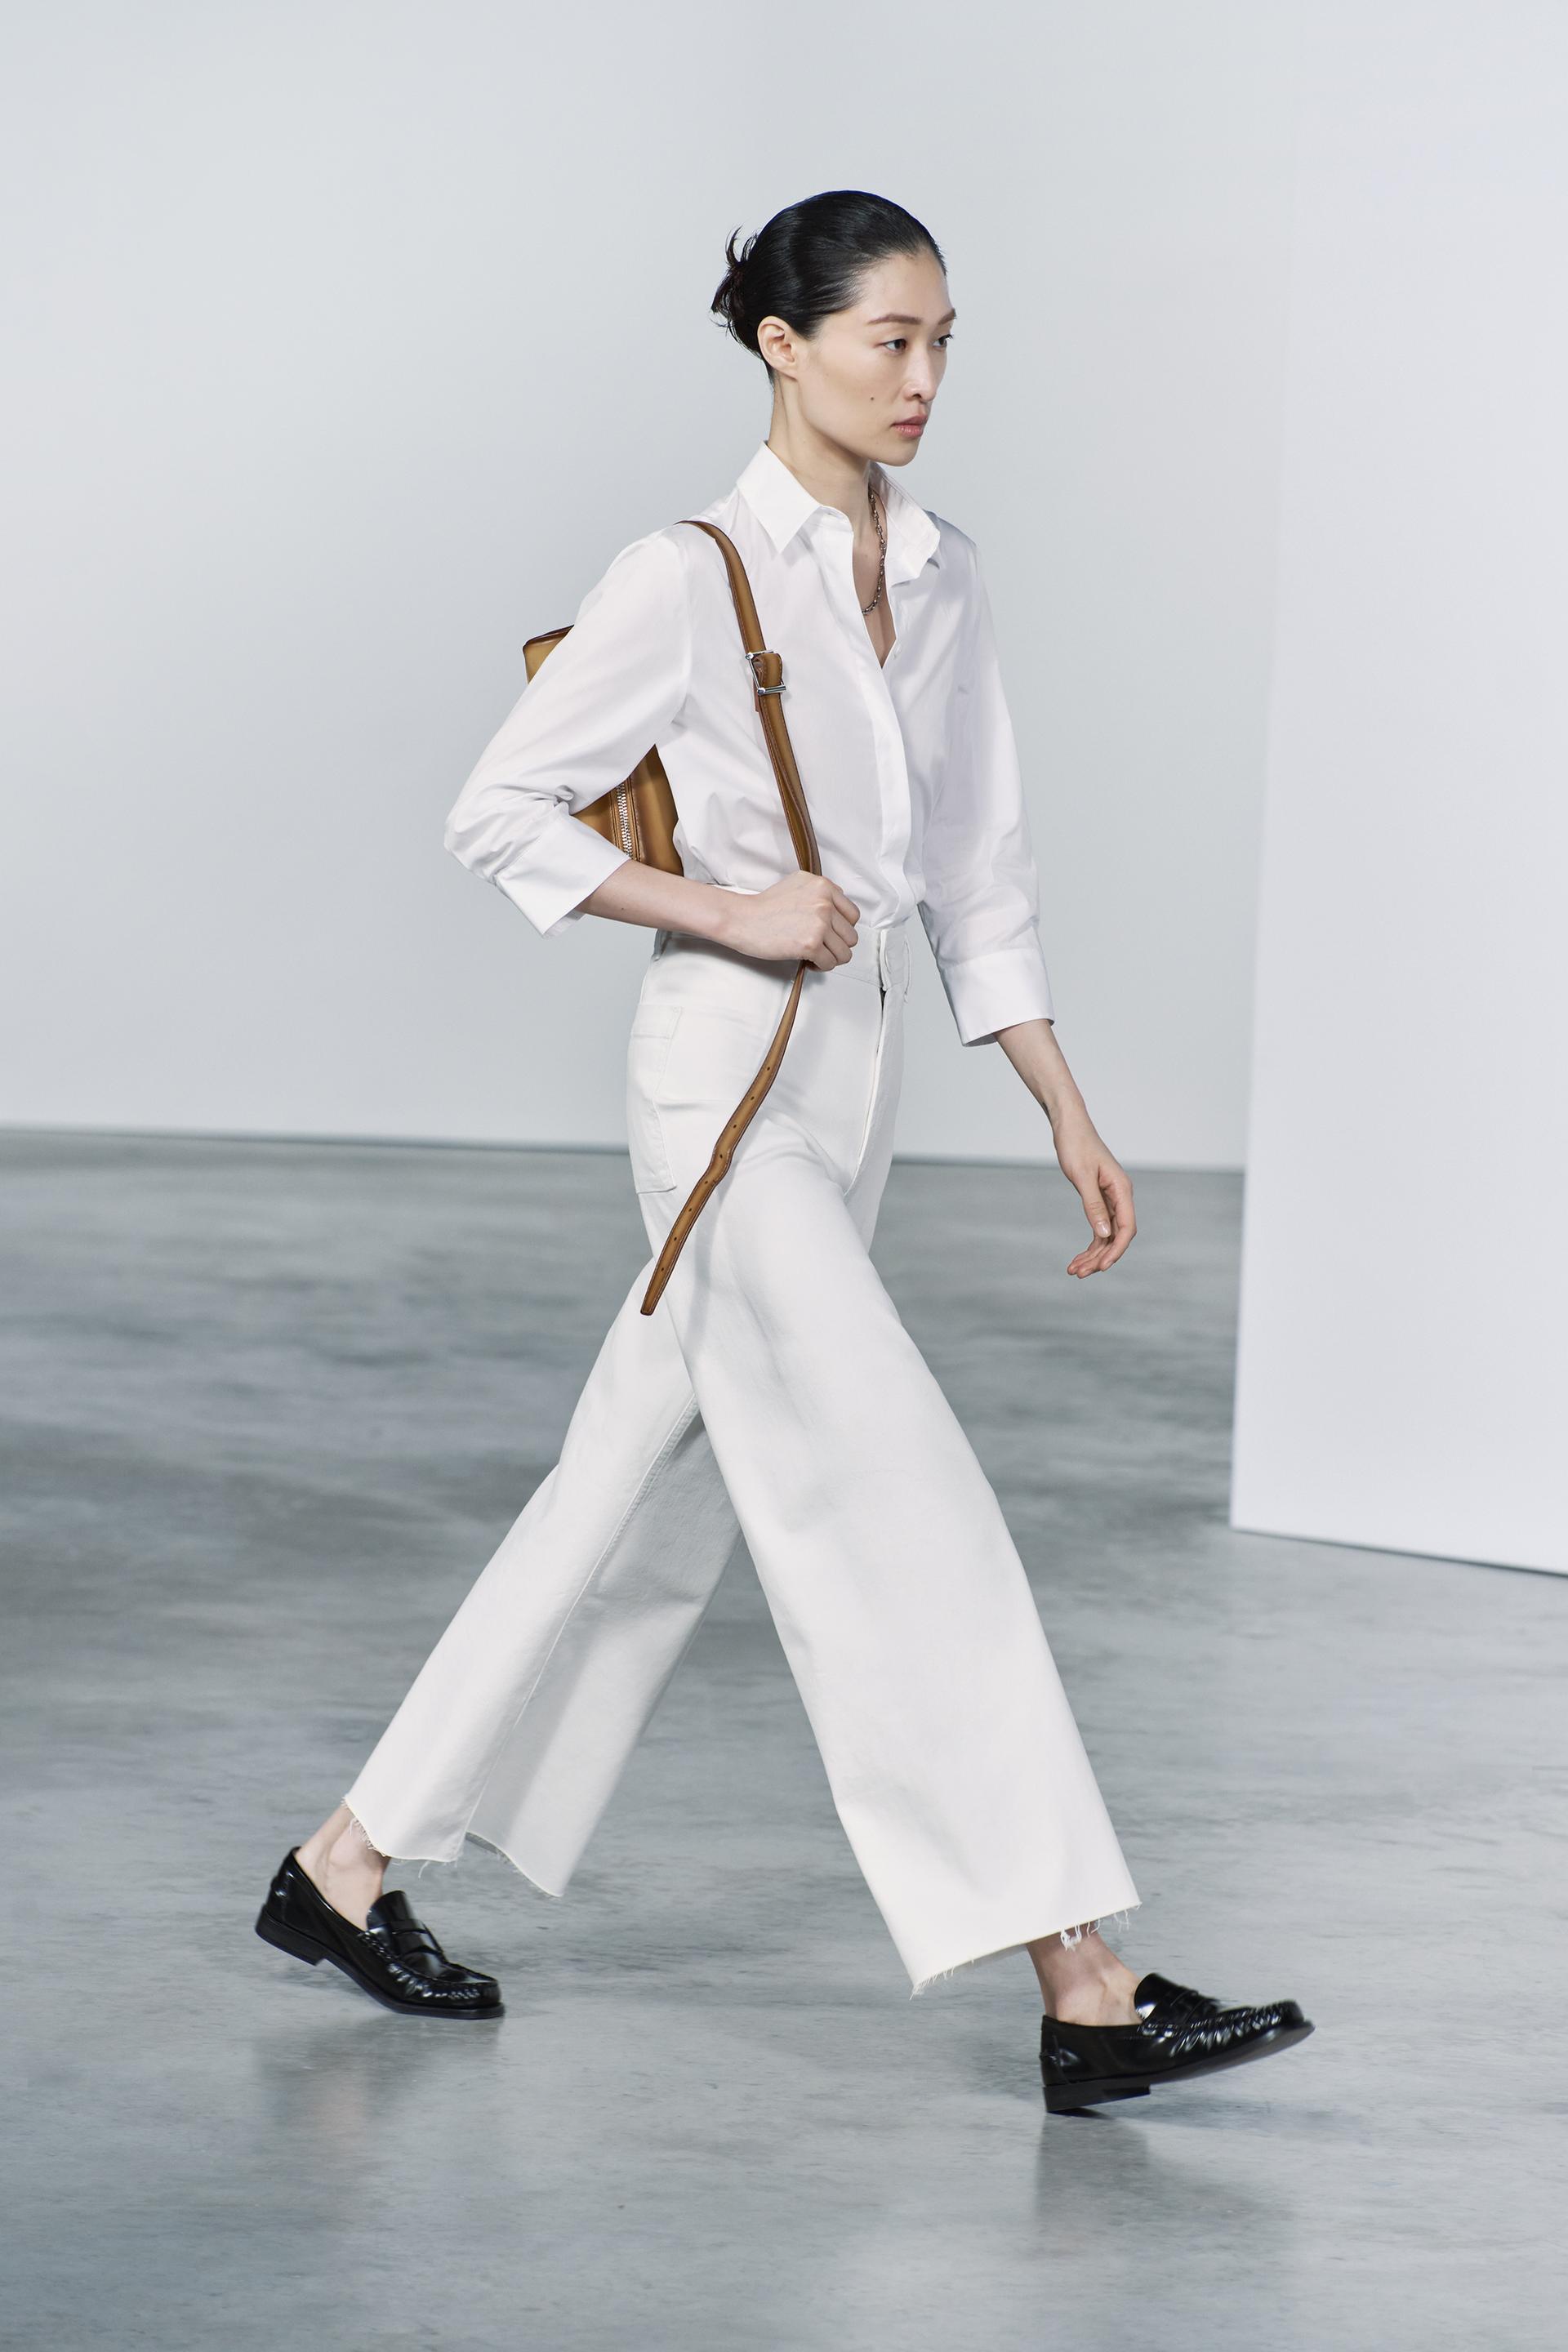 Pantalón Blanco Mujer Tiro Alto - Pipa – Tienda MCP